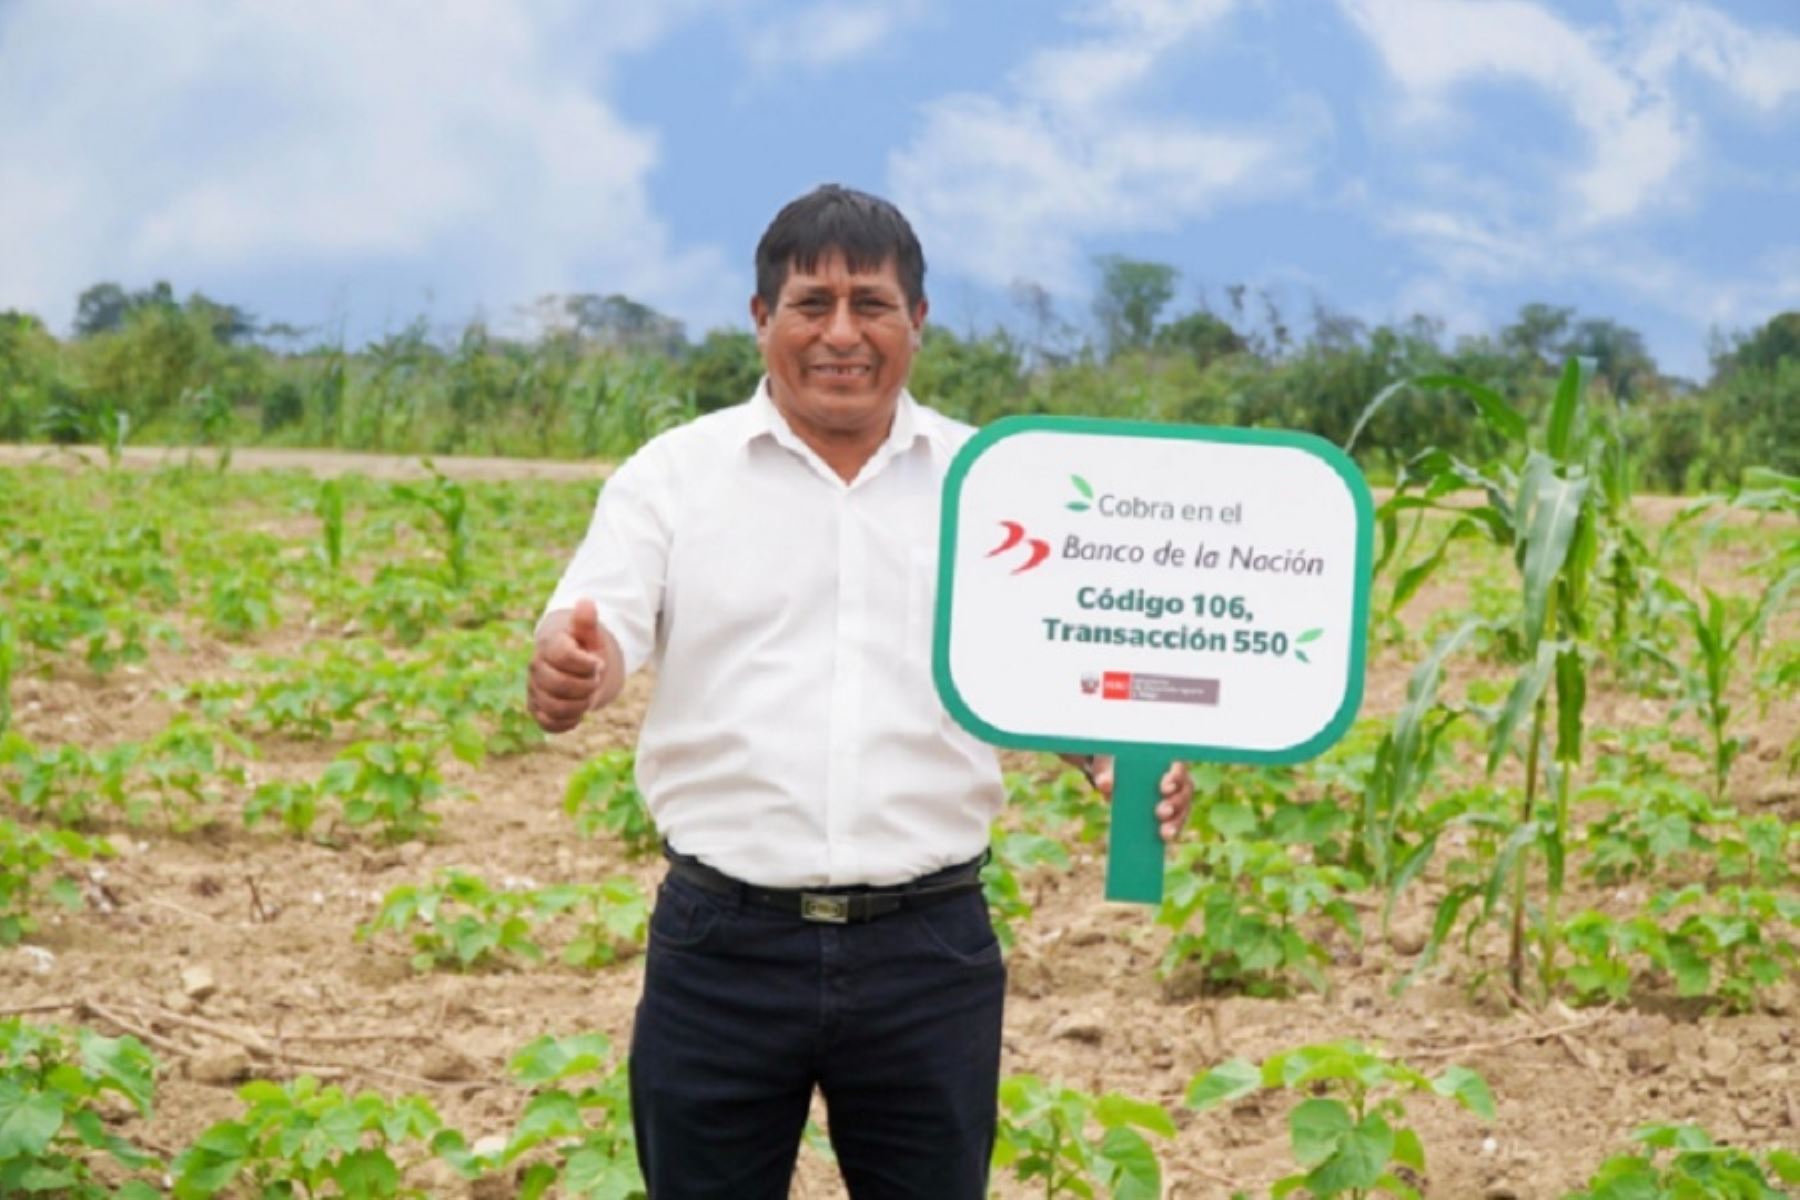 El Ministerio de Desarrollo Agrario y Riego  informó que a la fecha ya han cobrado 27,002 pequeños productoras y productores del campo en las regiones de Amazonas, Loreto, Madre de Dios, San Martín y Ucayali, equivalente a S/ 31.5 millones, lo que representa un avance financiero de 97%.